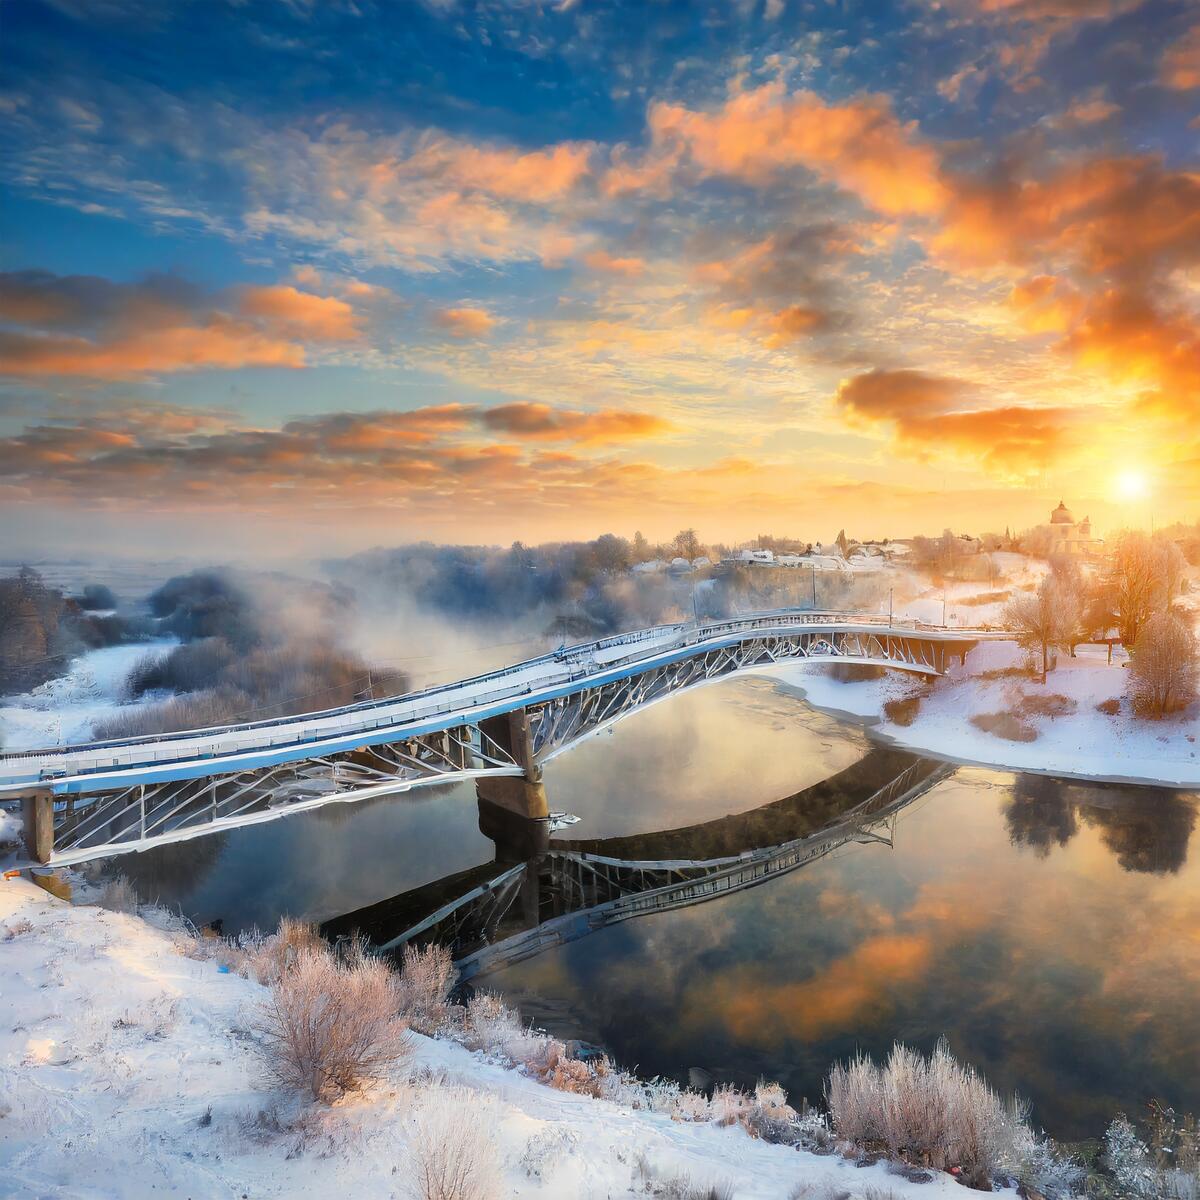 A bright dawn over the river in winter